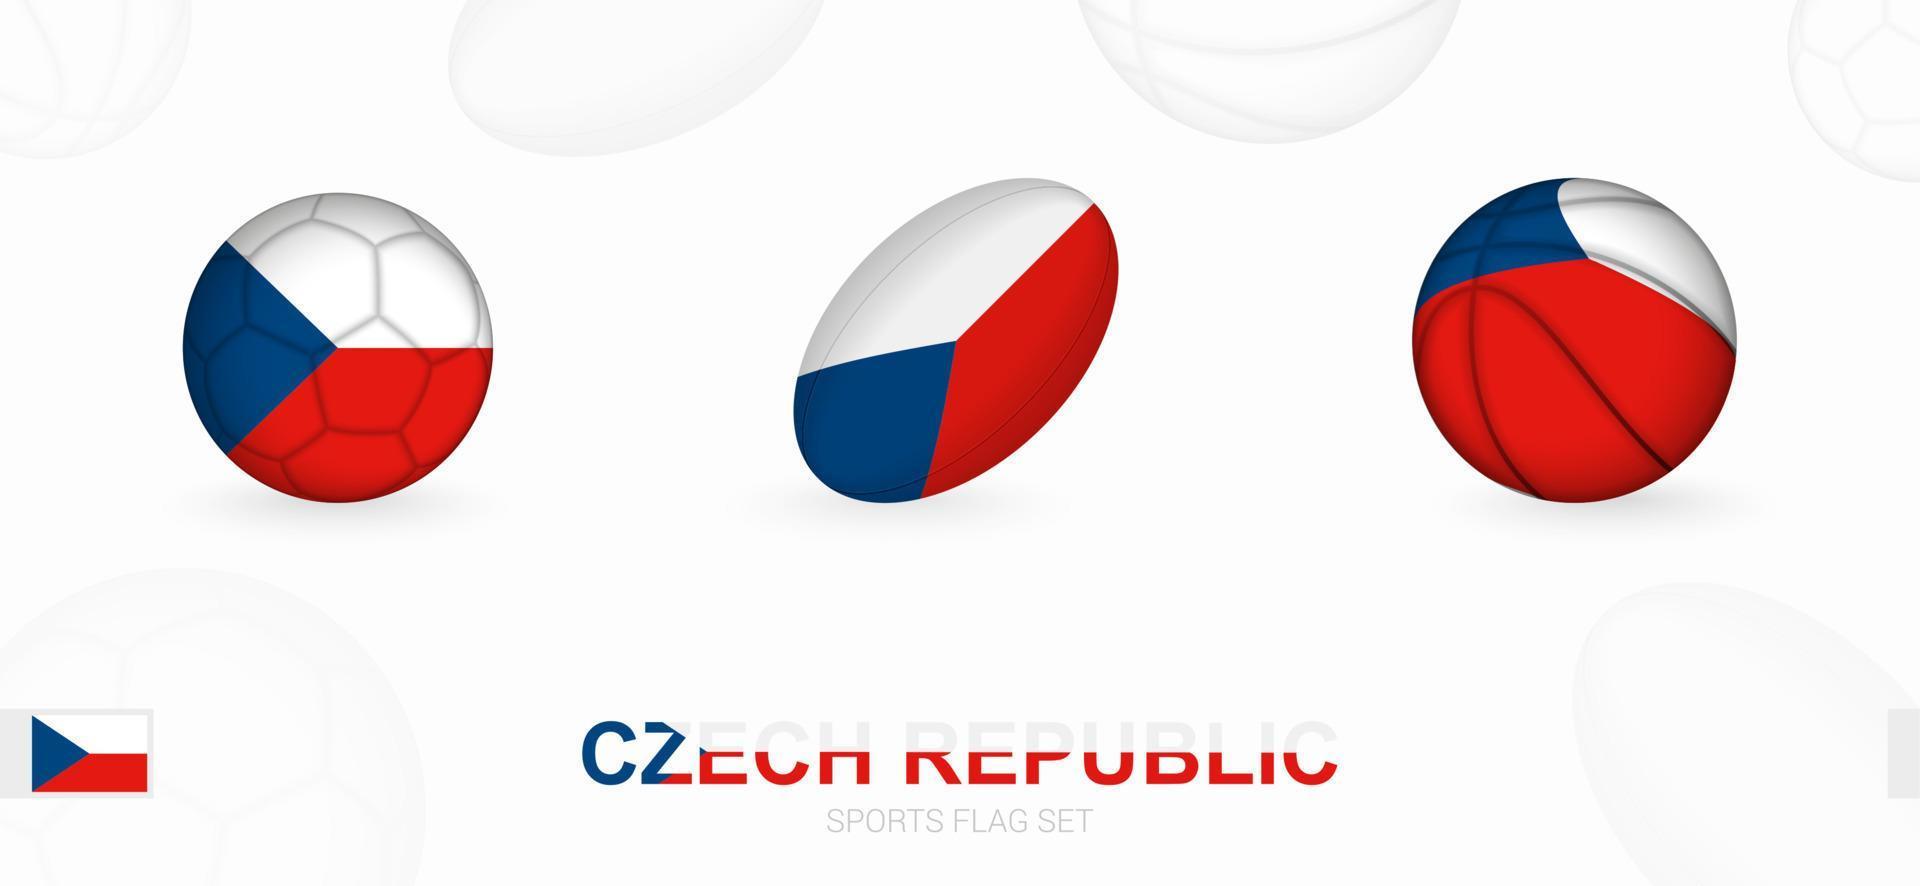 Esportes ícones para futebol, rúgbi e basquetebol com a bandeira do tcheco república. vetor